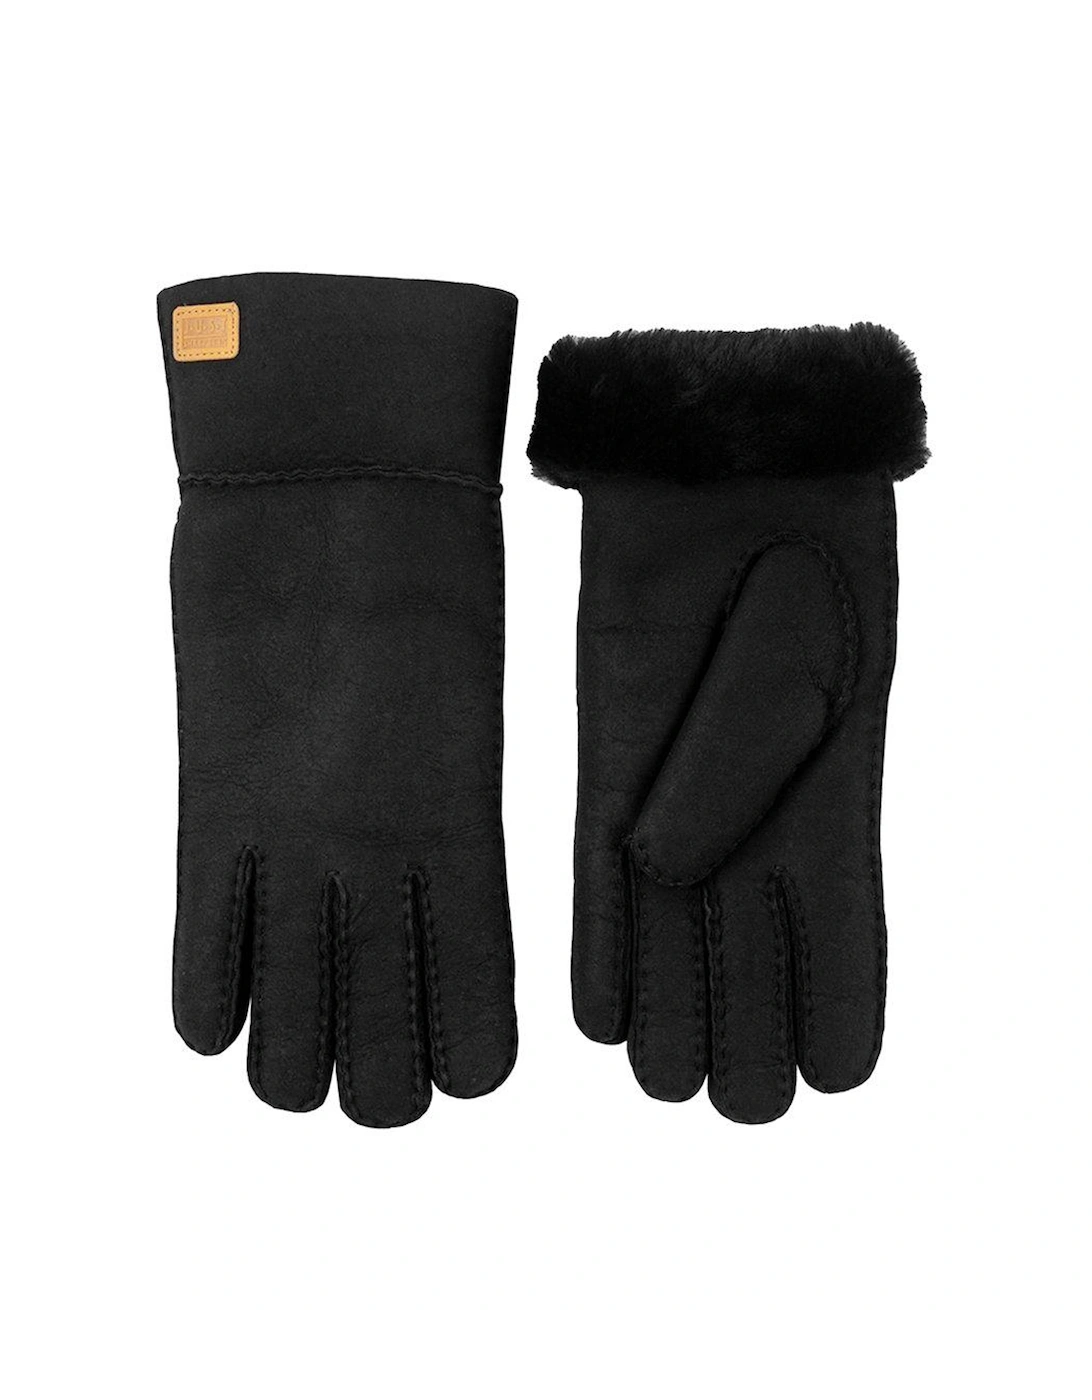 Charlotte Sheepskin Gloves - Black, 4 of 3